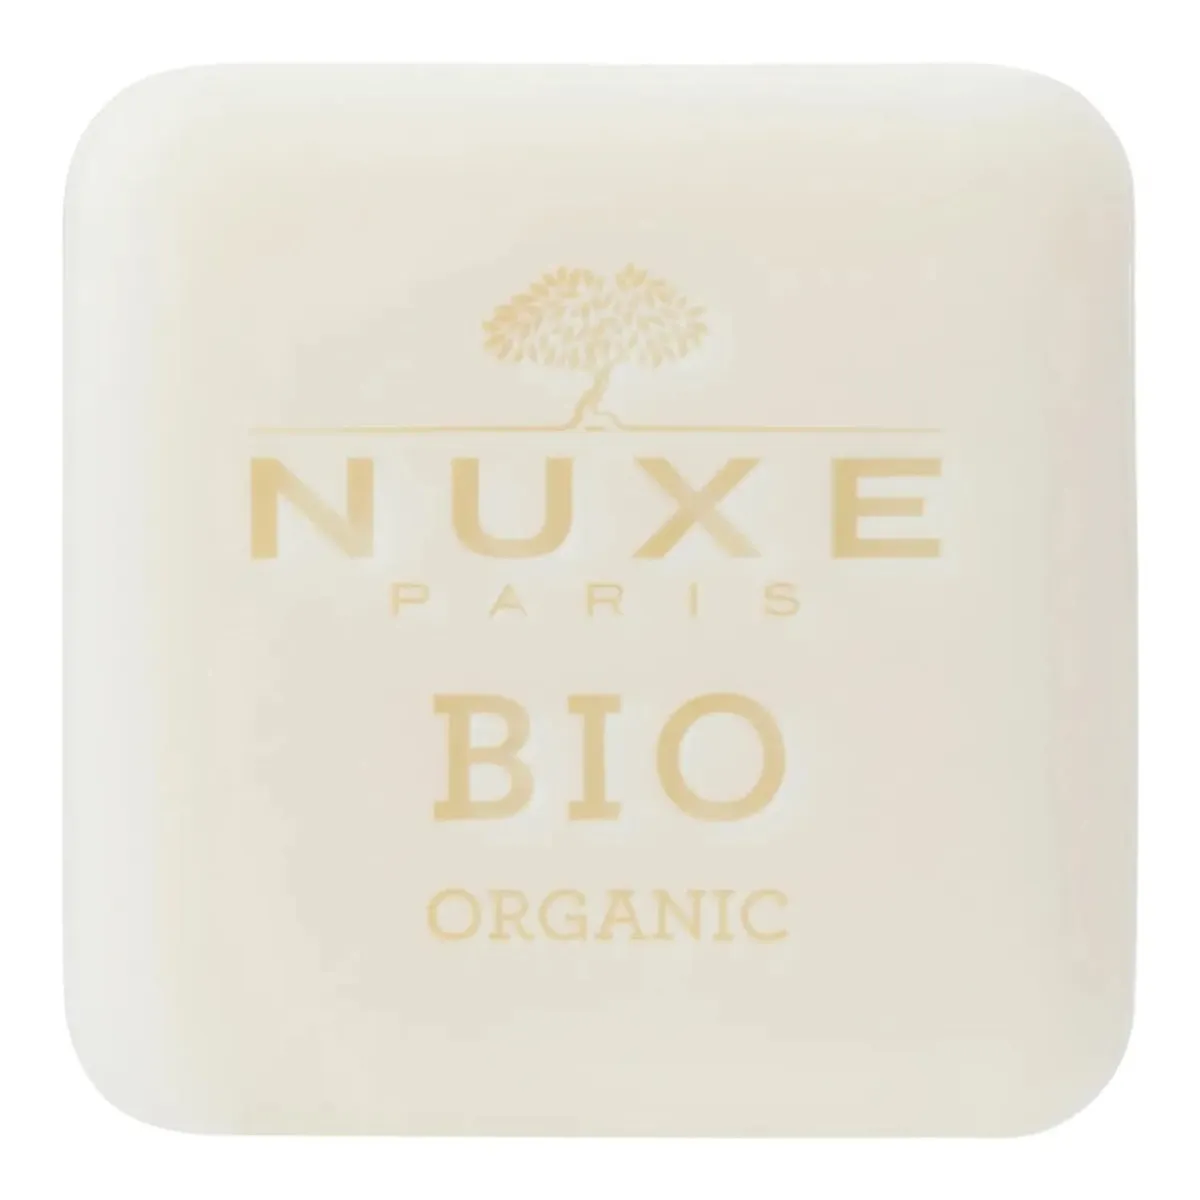 Sapun intens hidratant pentru toate tipurile de piele Bio Organic, 100g, Nuxe 